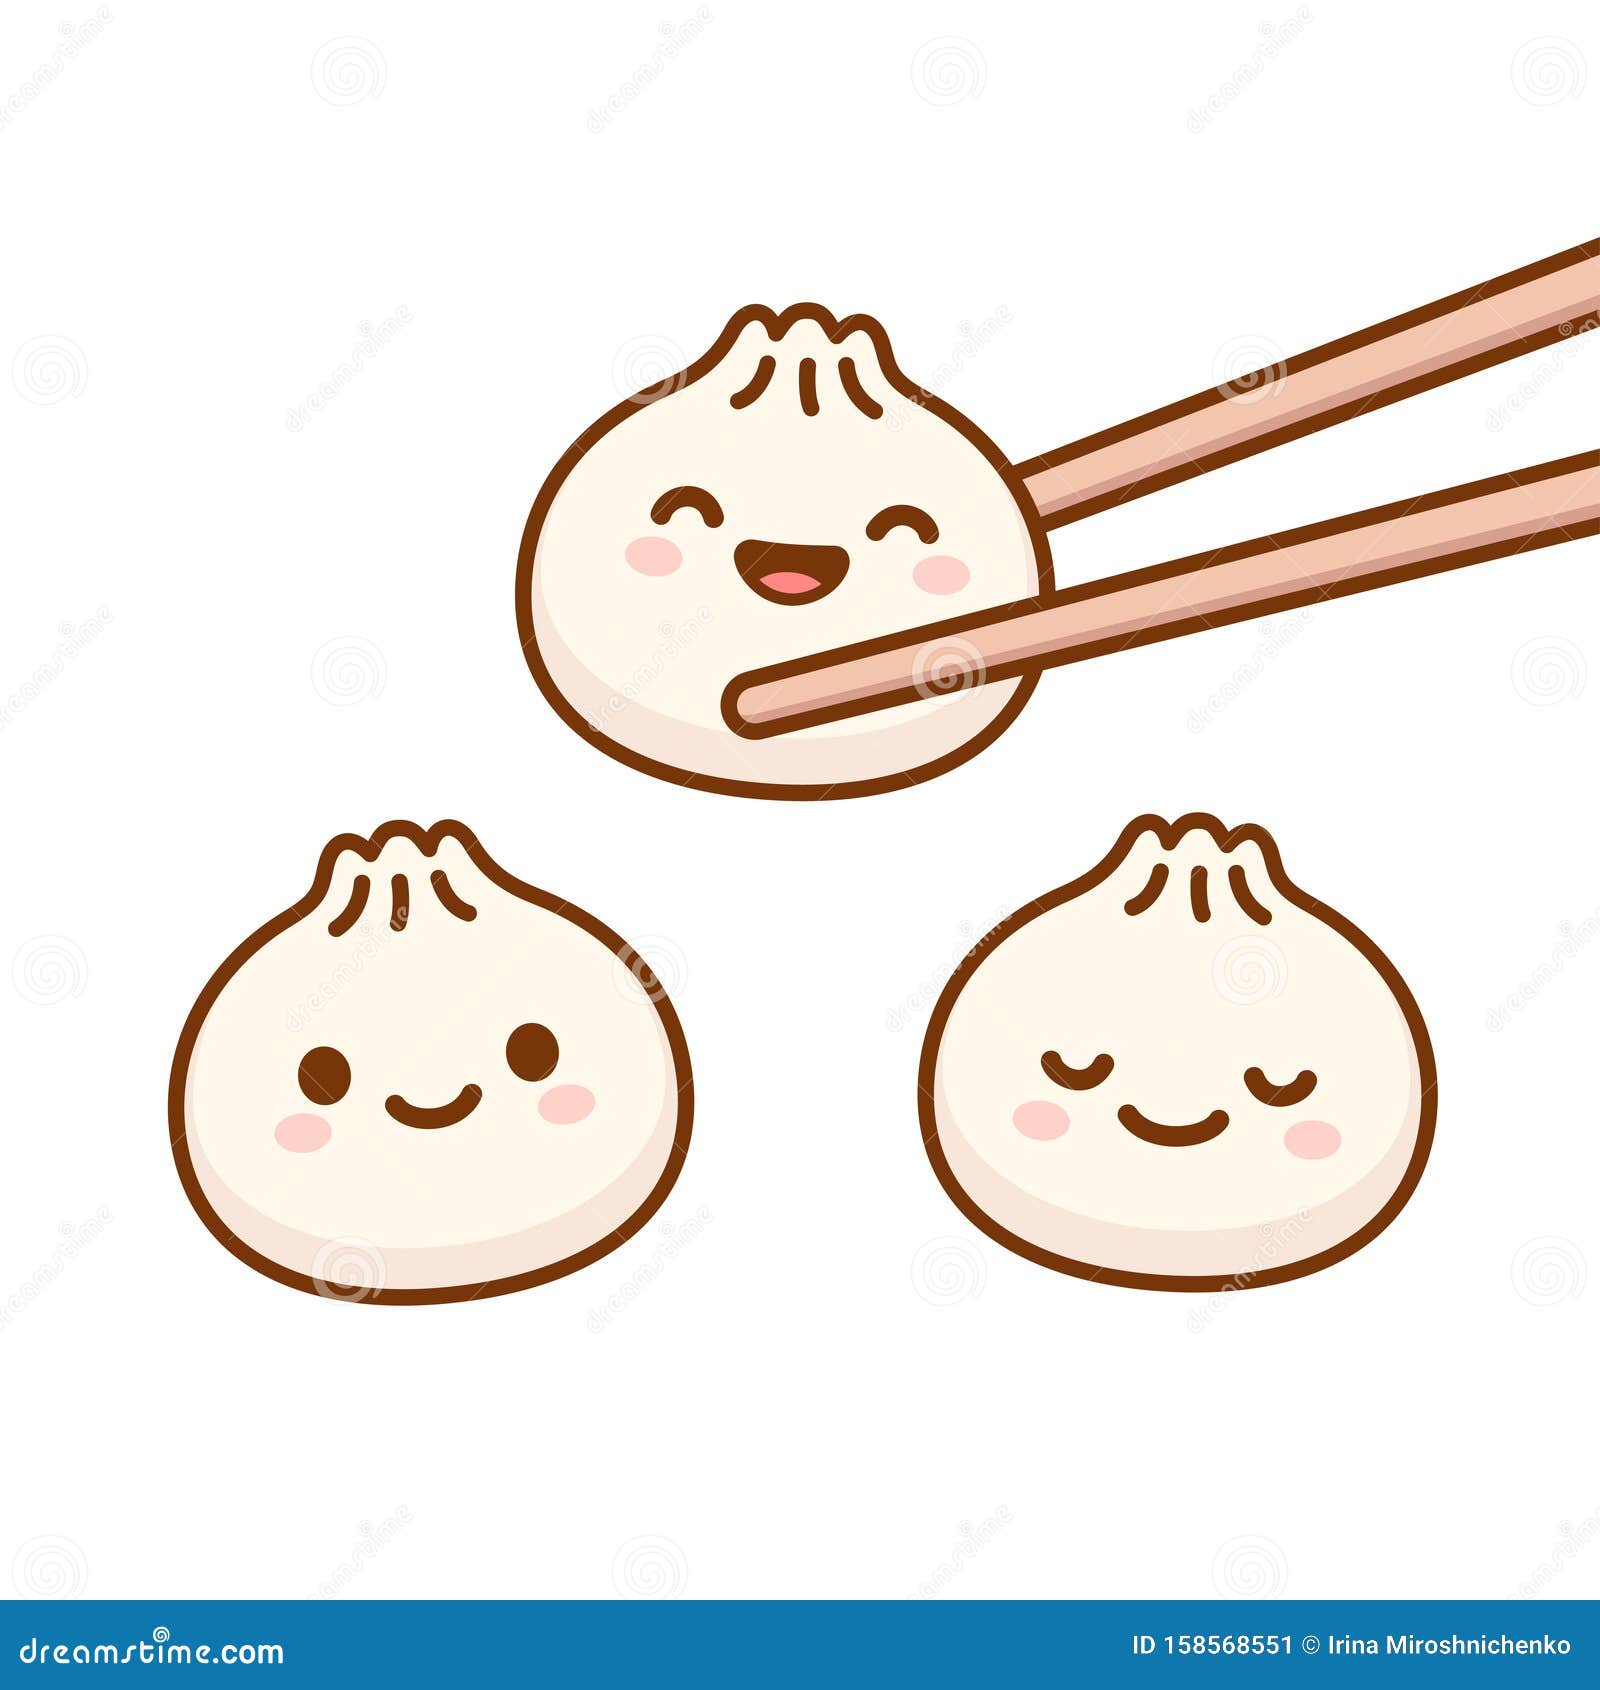 cute cartoon dumplings